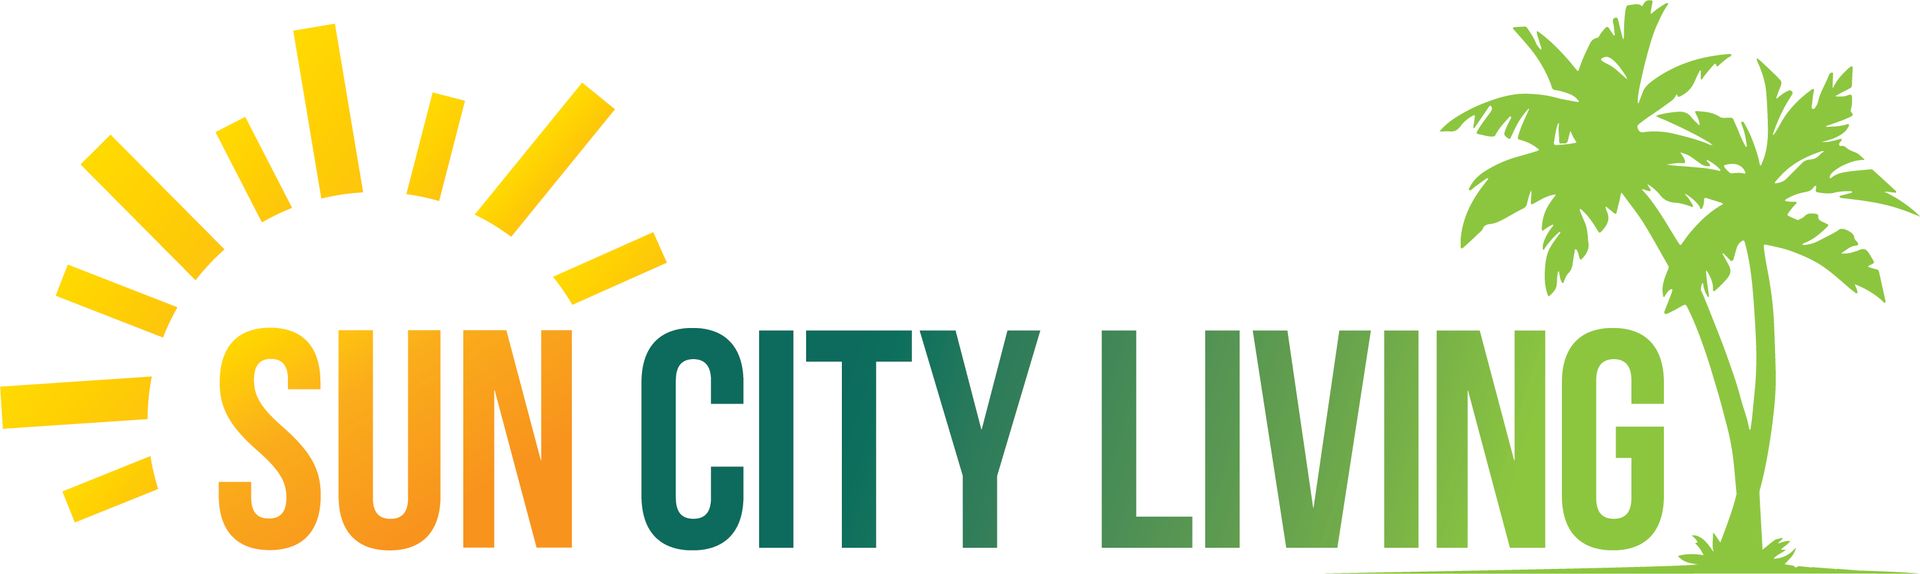 sun city living v1 logo